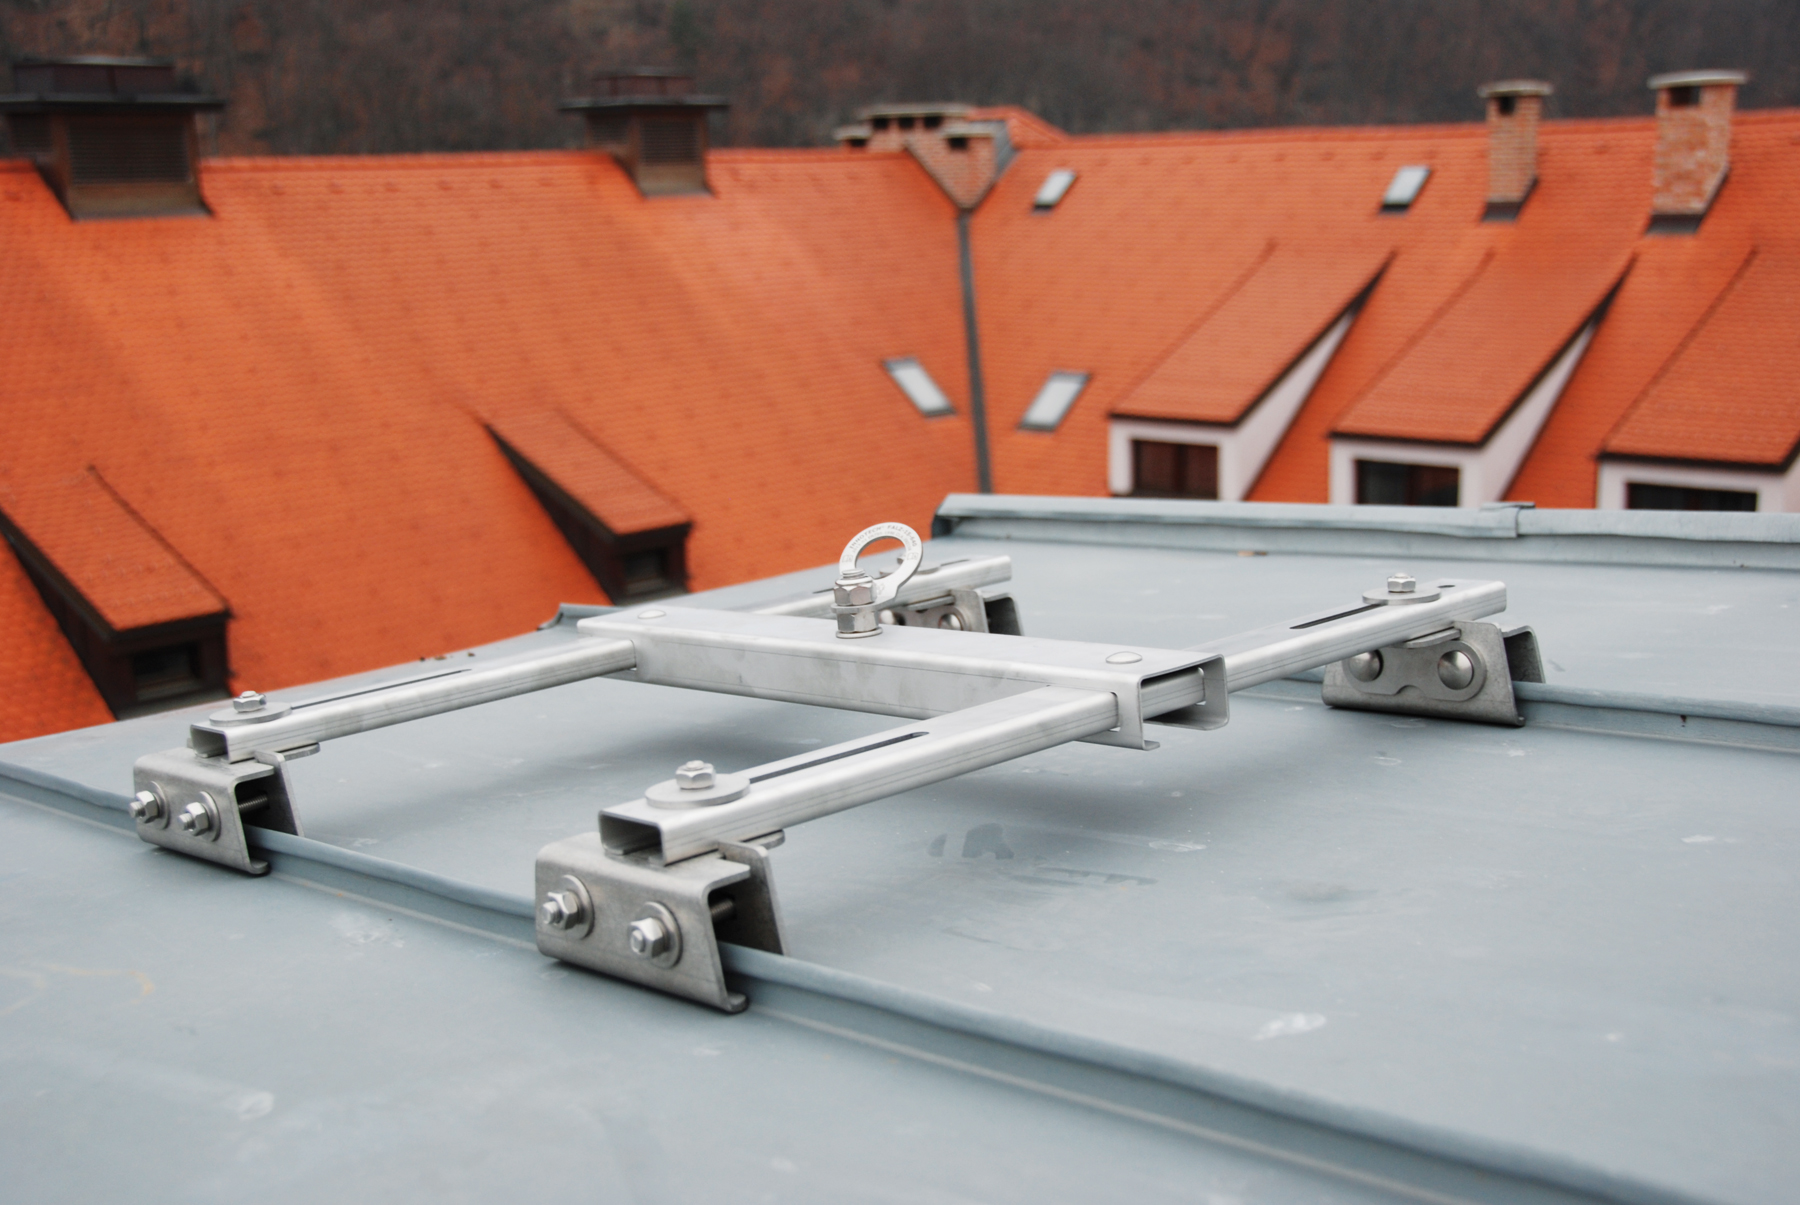 Kotviaci bezpečnostný prvok na strmej streche opery v Banskej Bystrici.